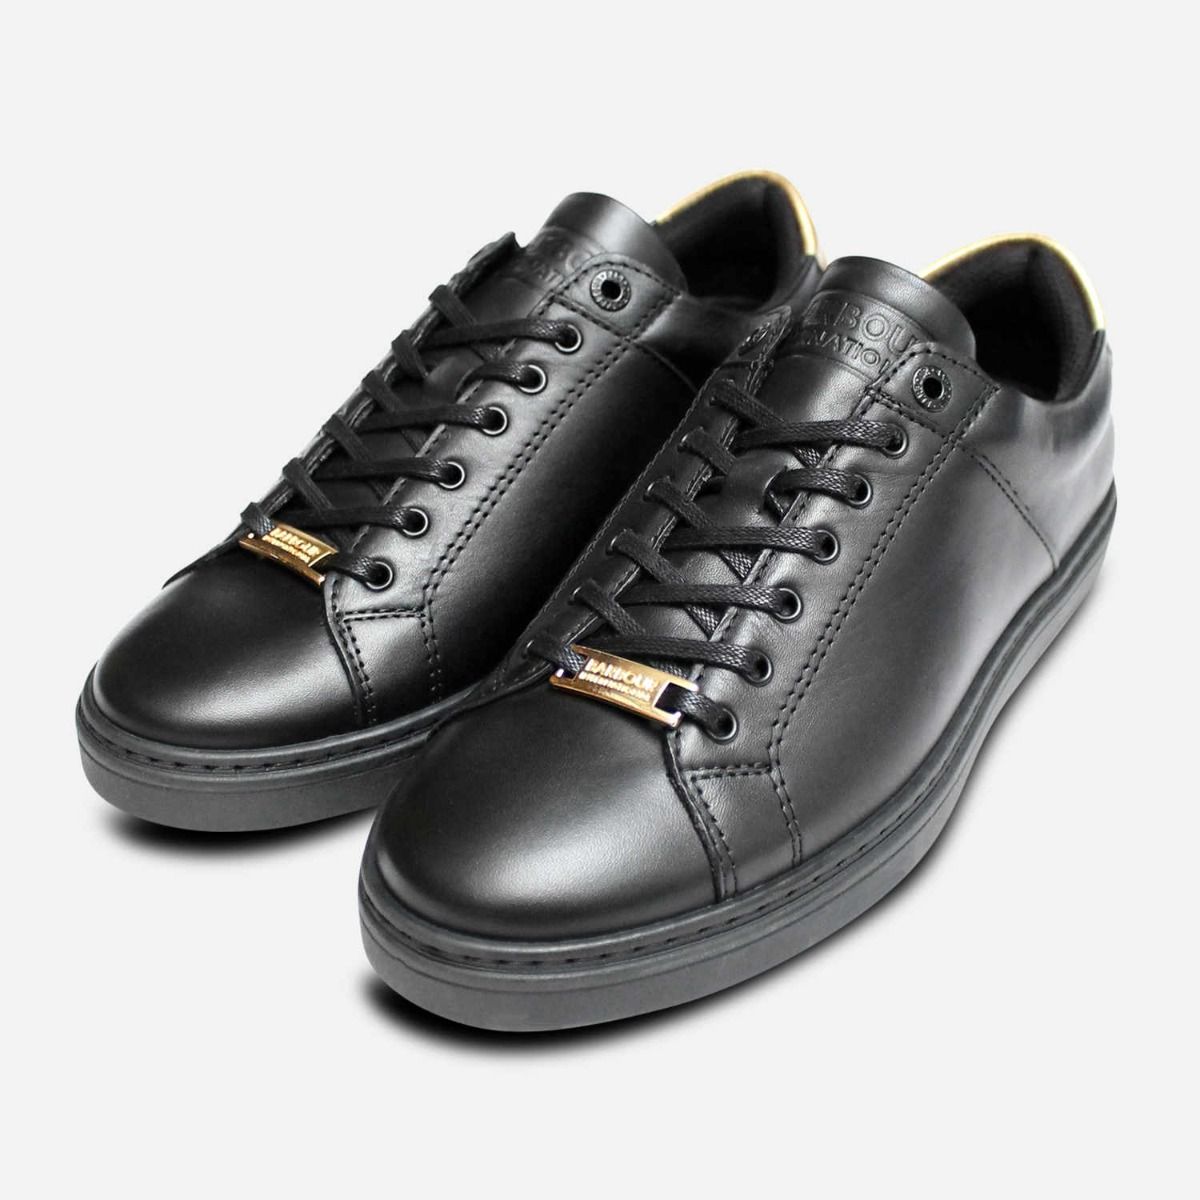 black trainer shoes